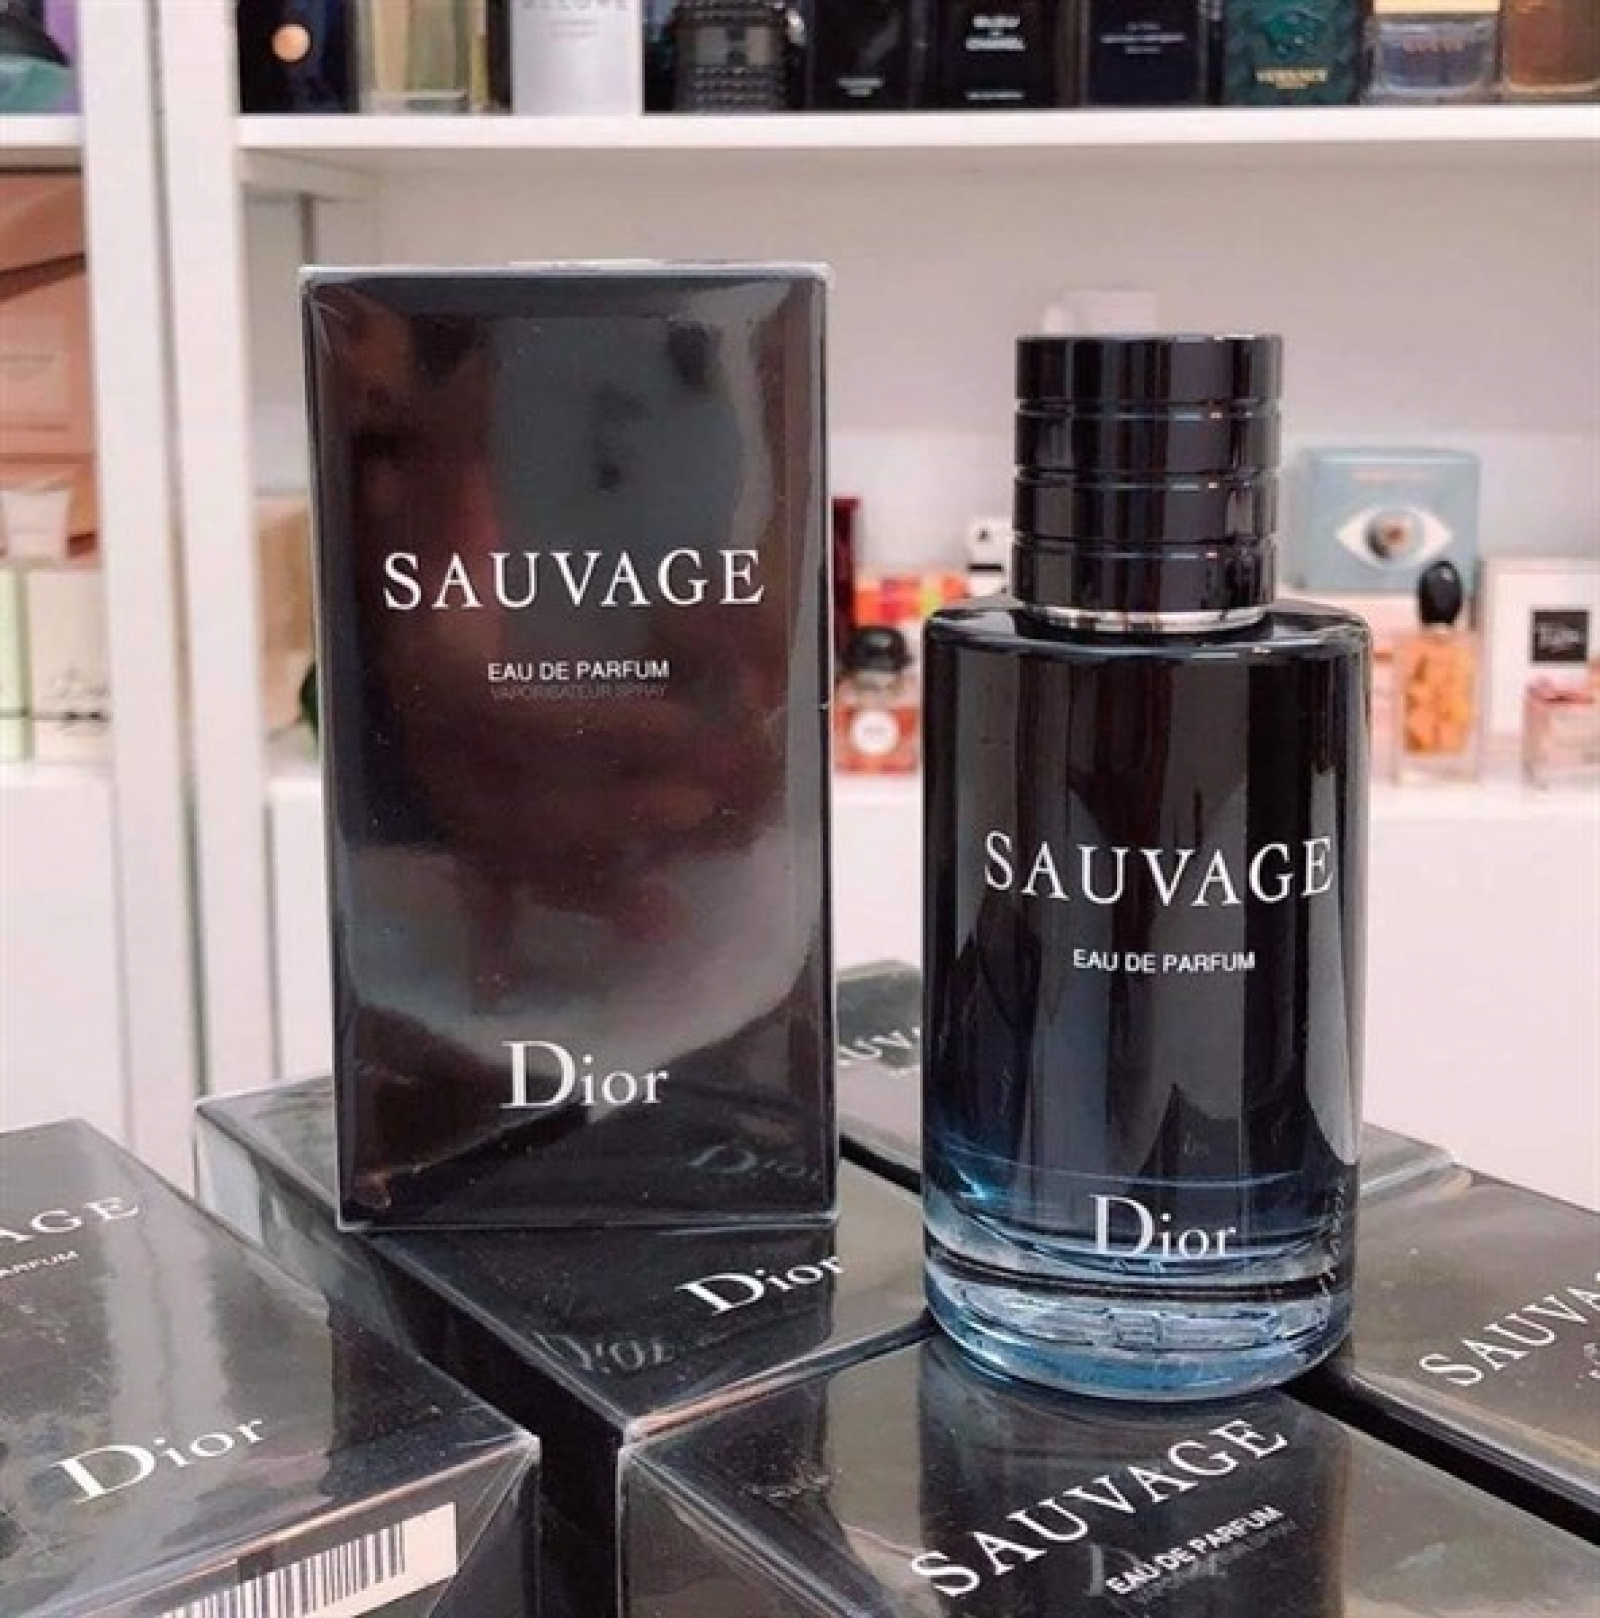 Nước Hoa Christian Dior Sauvage Eau de Parfum chính hãng rẻ nhất HCM